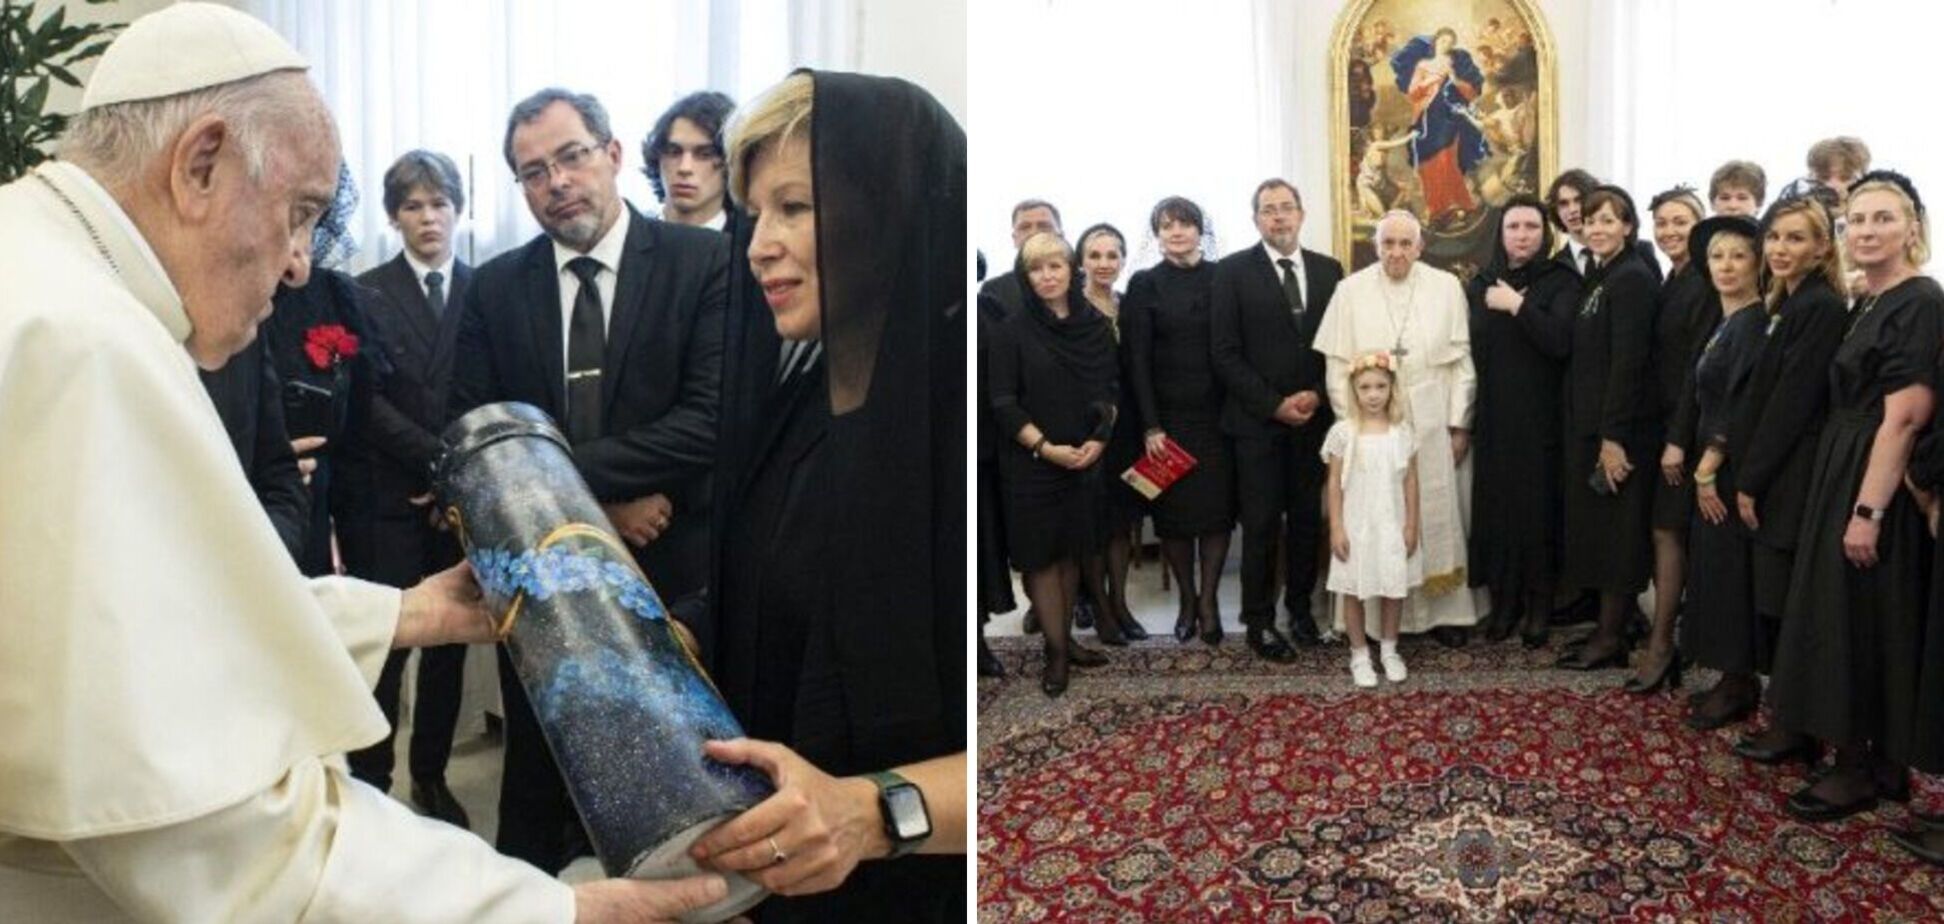 Папа Франциск встретился в Ватикане с женами украинских послов. Фото и видео